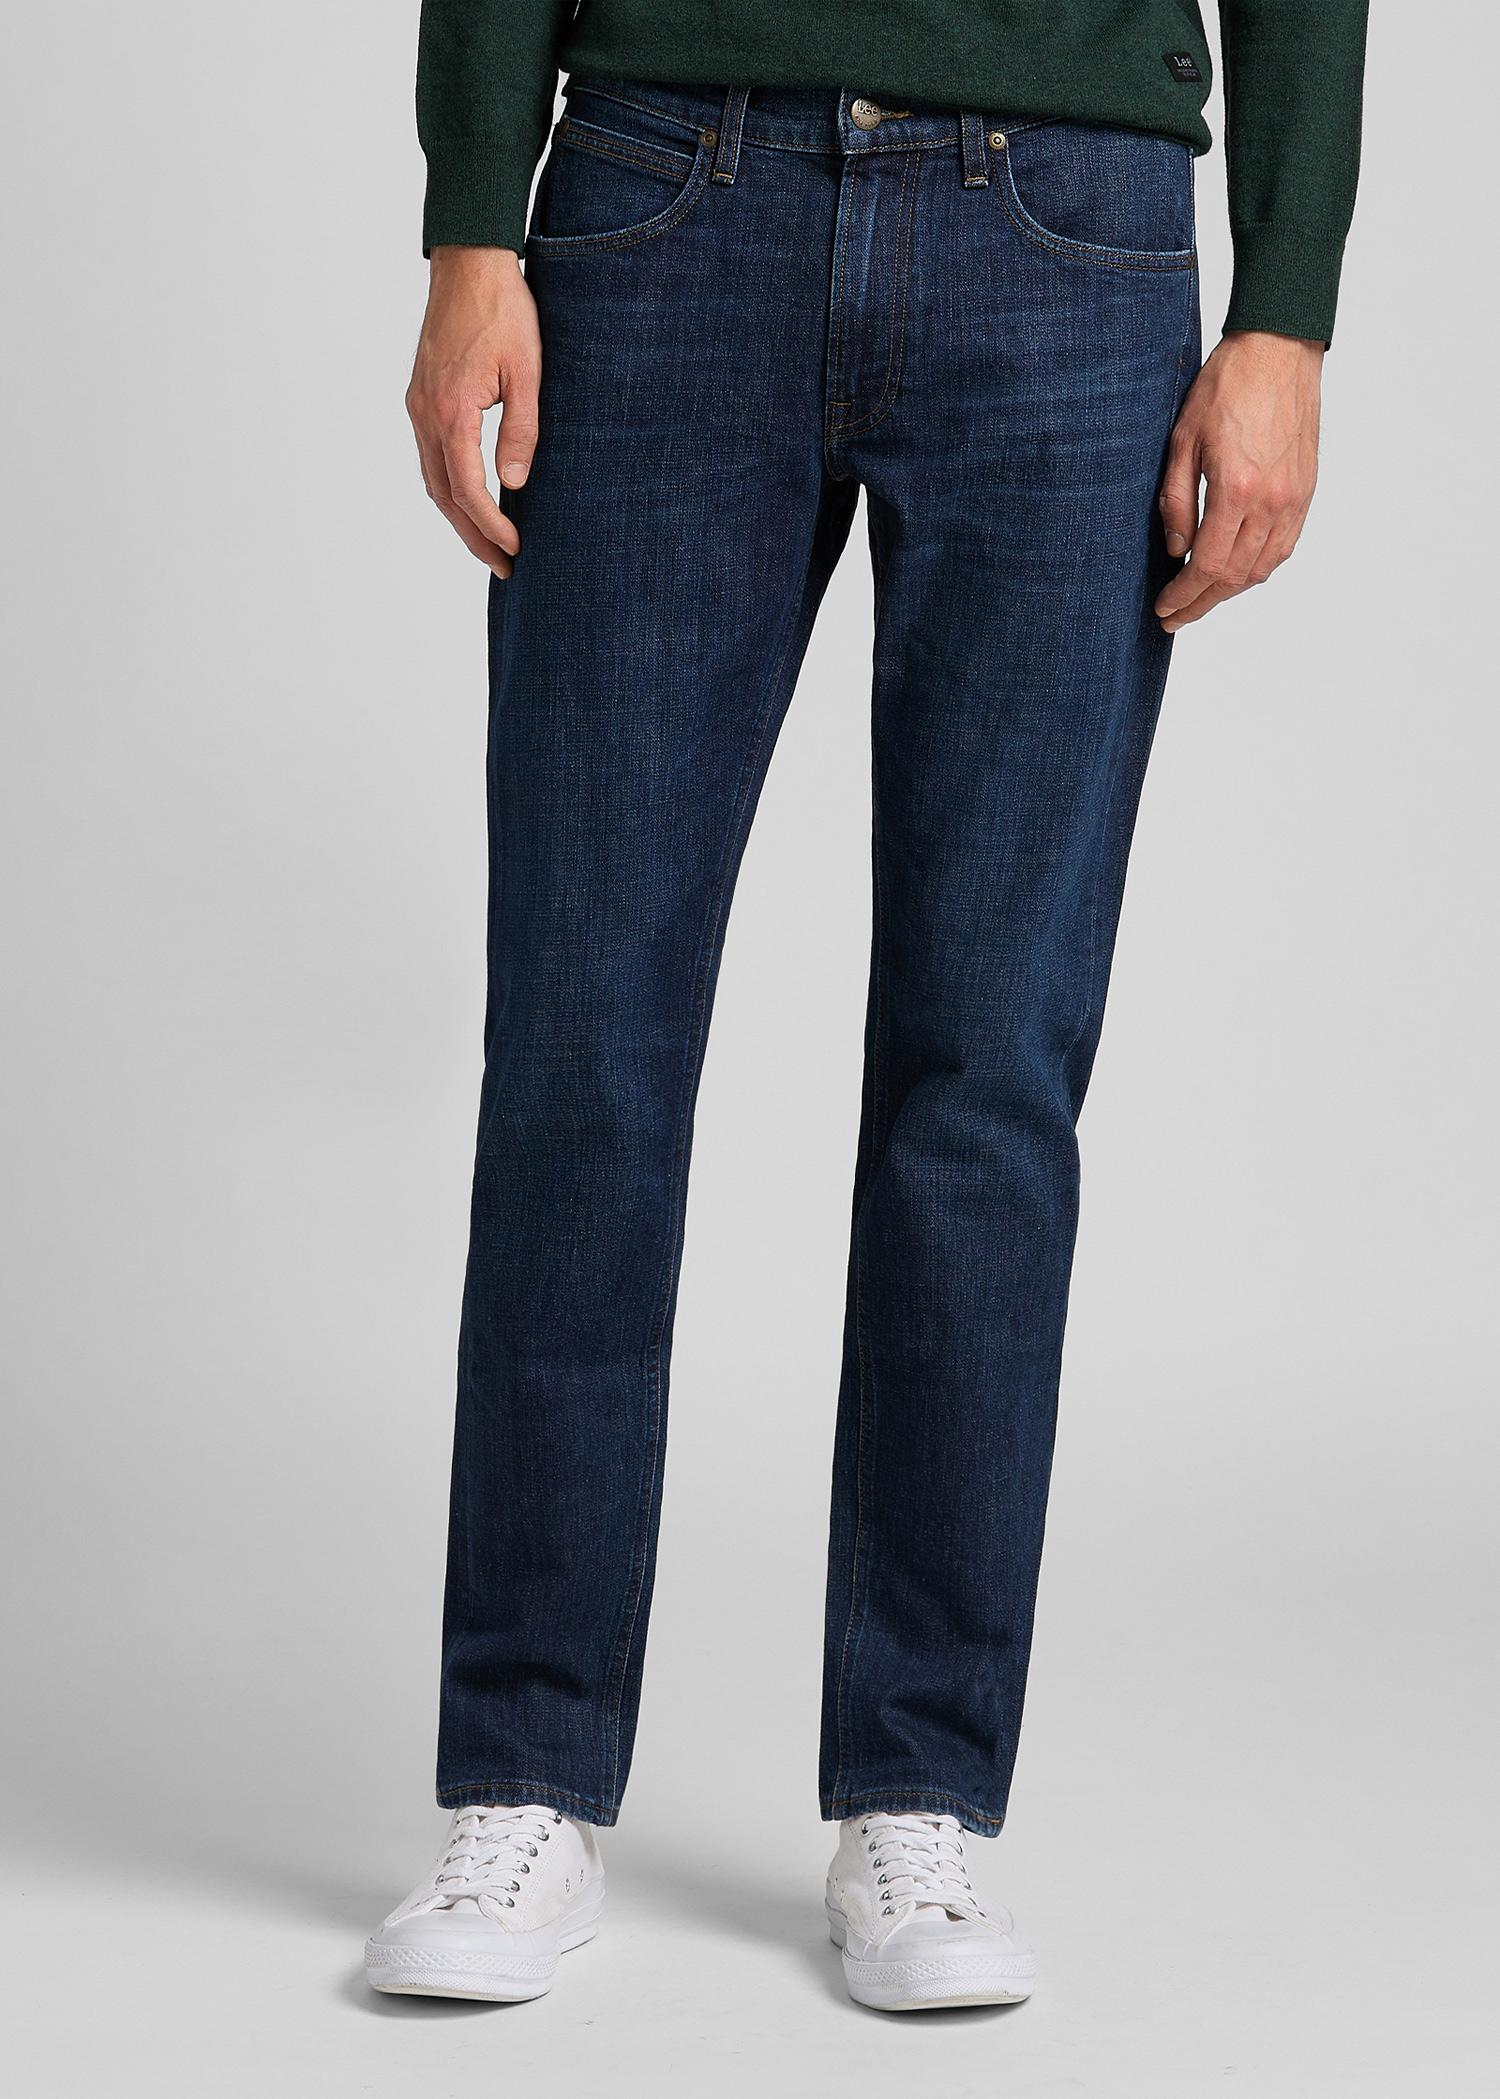 Lee - Daren zip jeans Tick